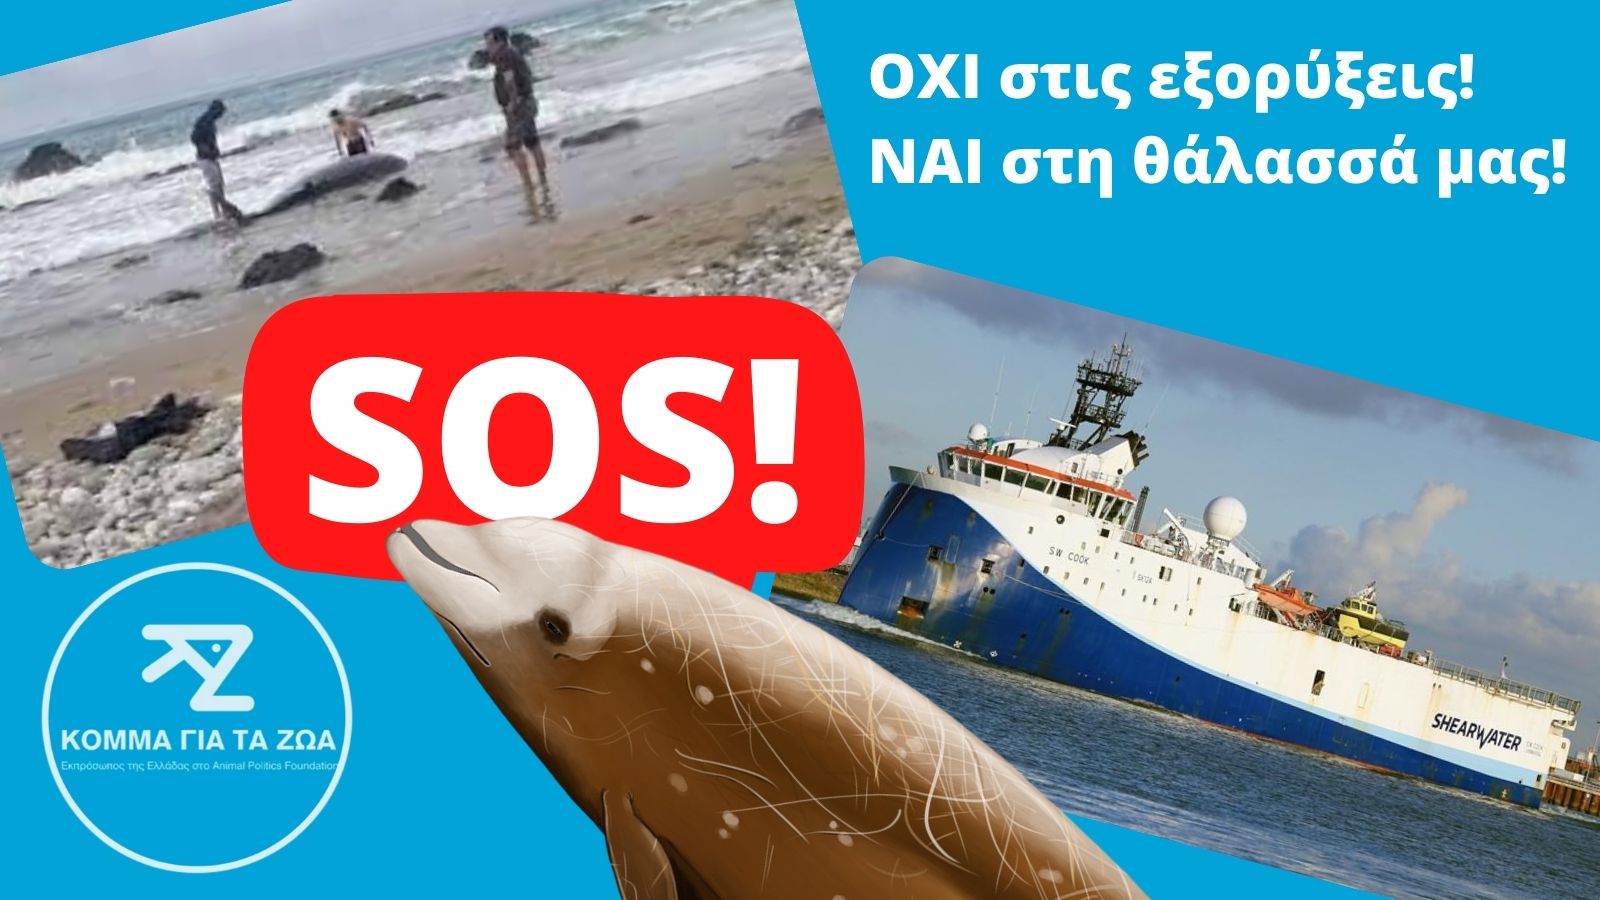 Προαναγγελθέν έγκλημα κατά του ελληνικού και παγκόσμιου θαλάσσιου περιβάλλοντος